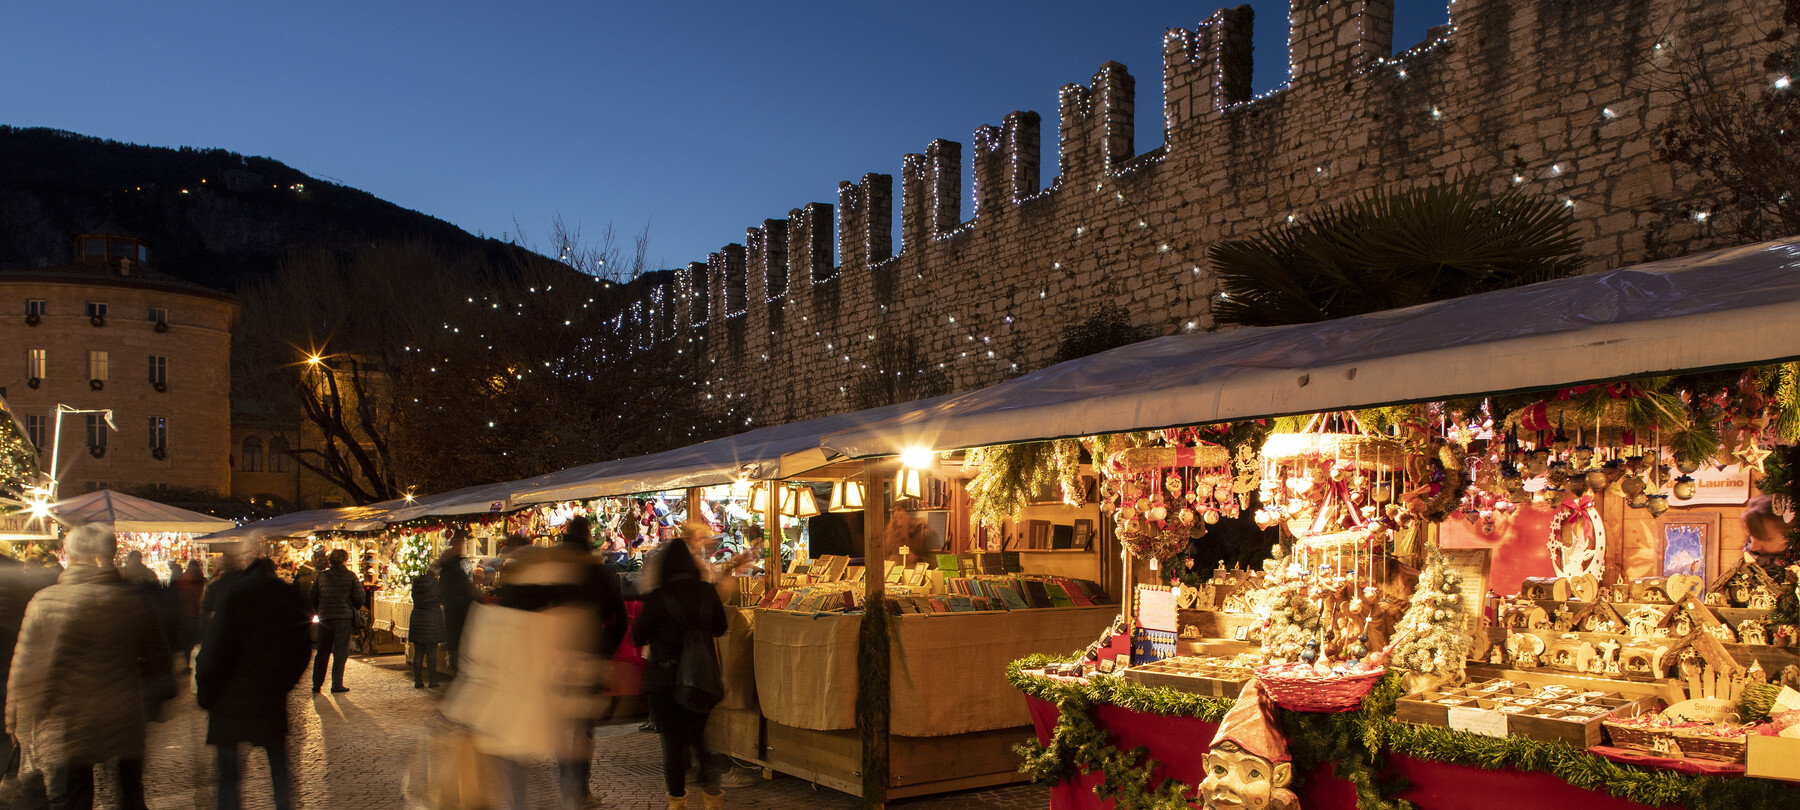 Valle dell'Adige - Trento - Piazza Fiera - Mercatini di Natale